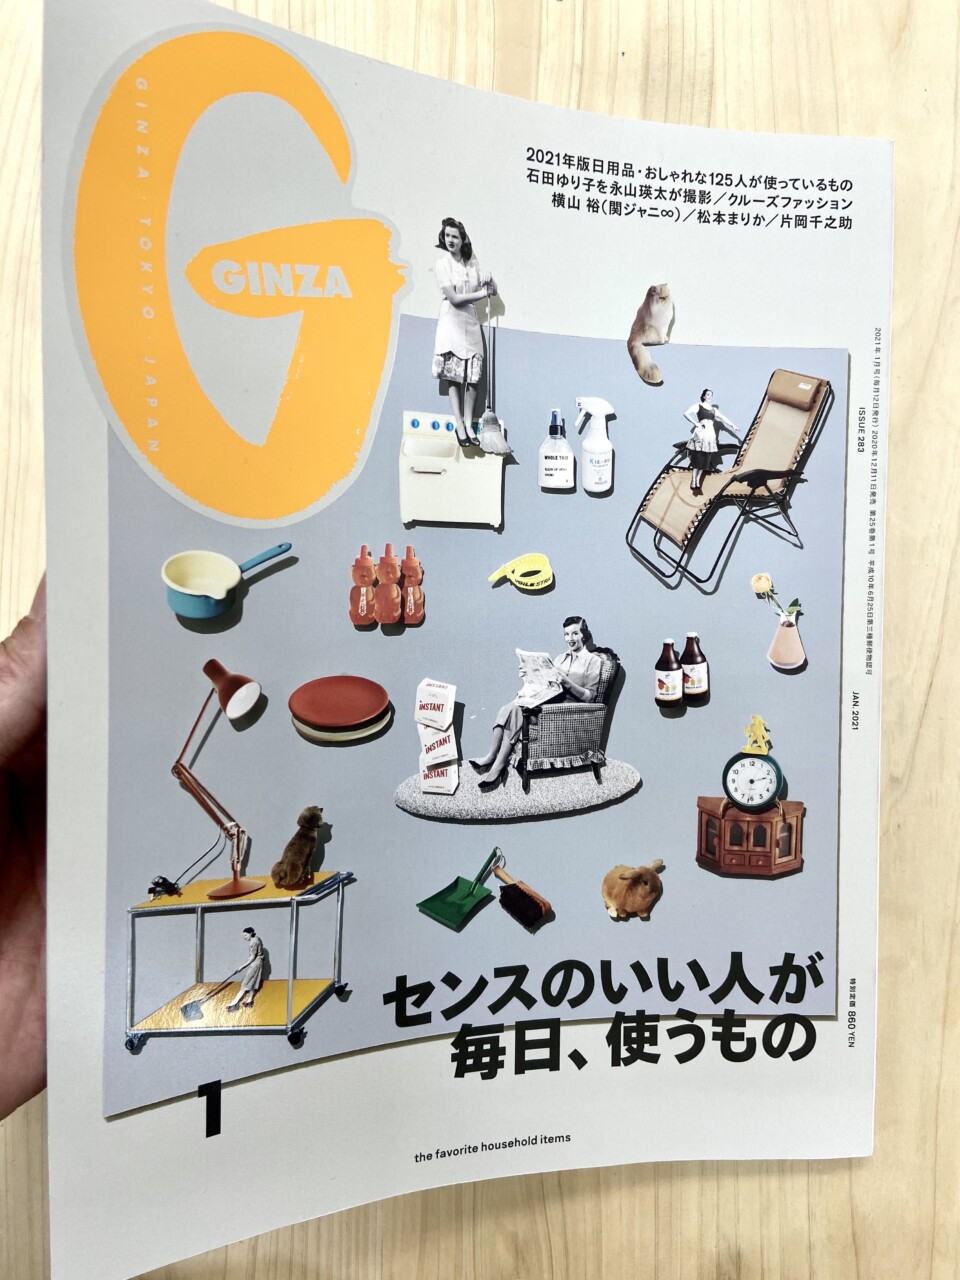 雑誌「GINZA」2021年1月号に掲載